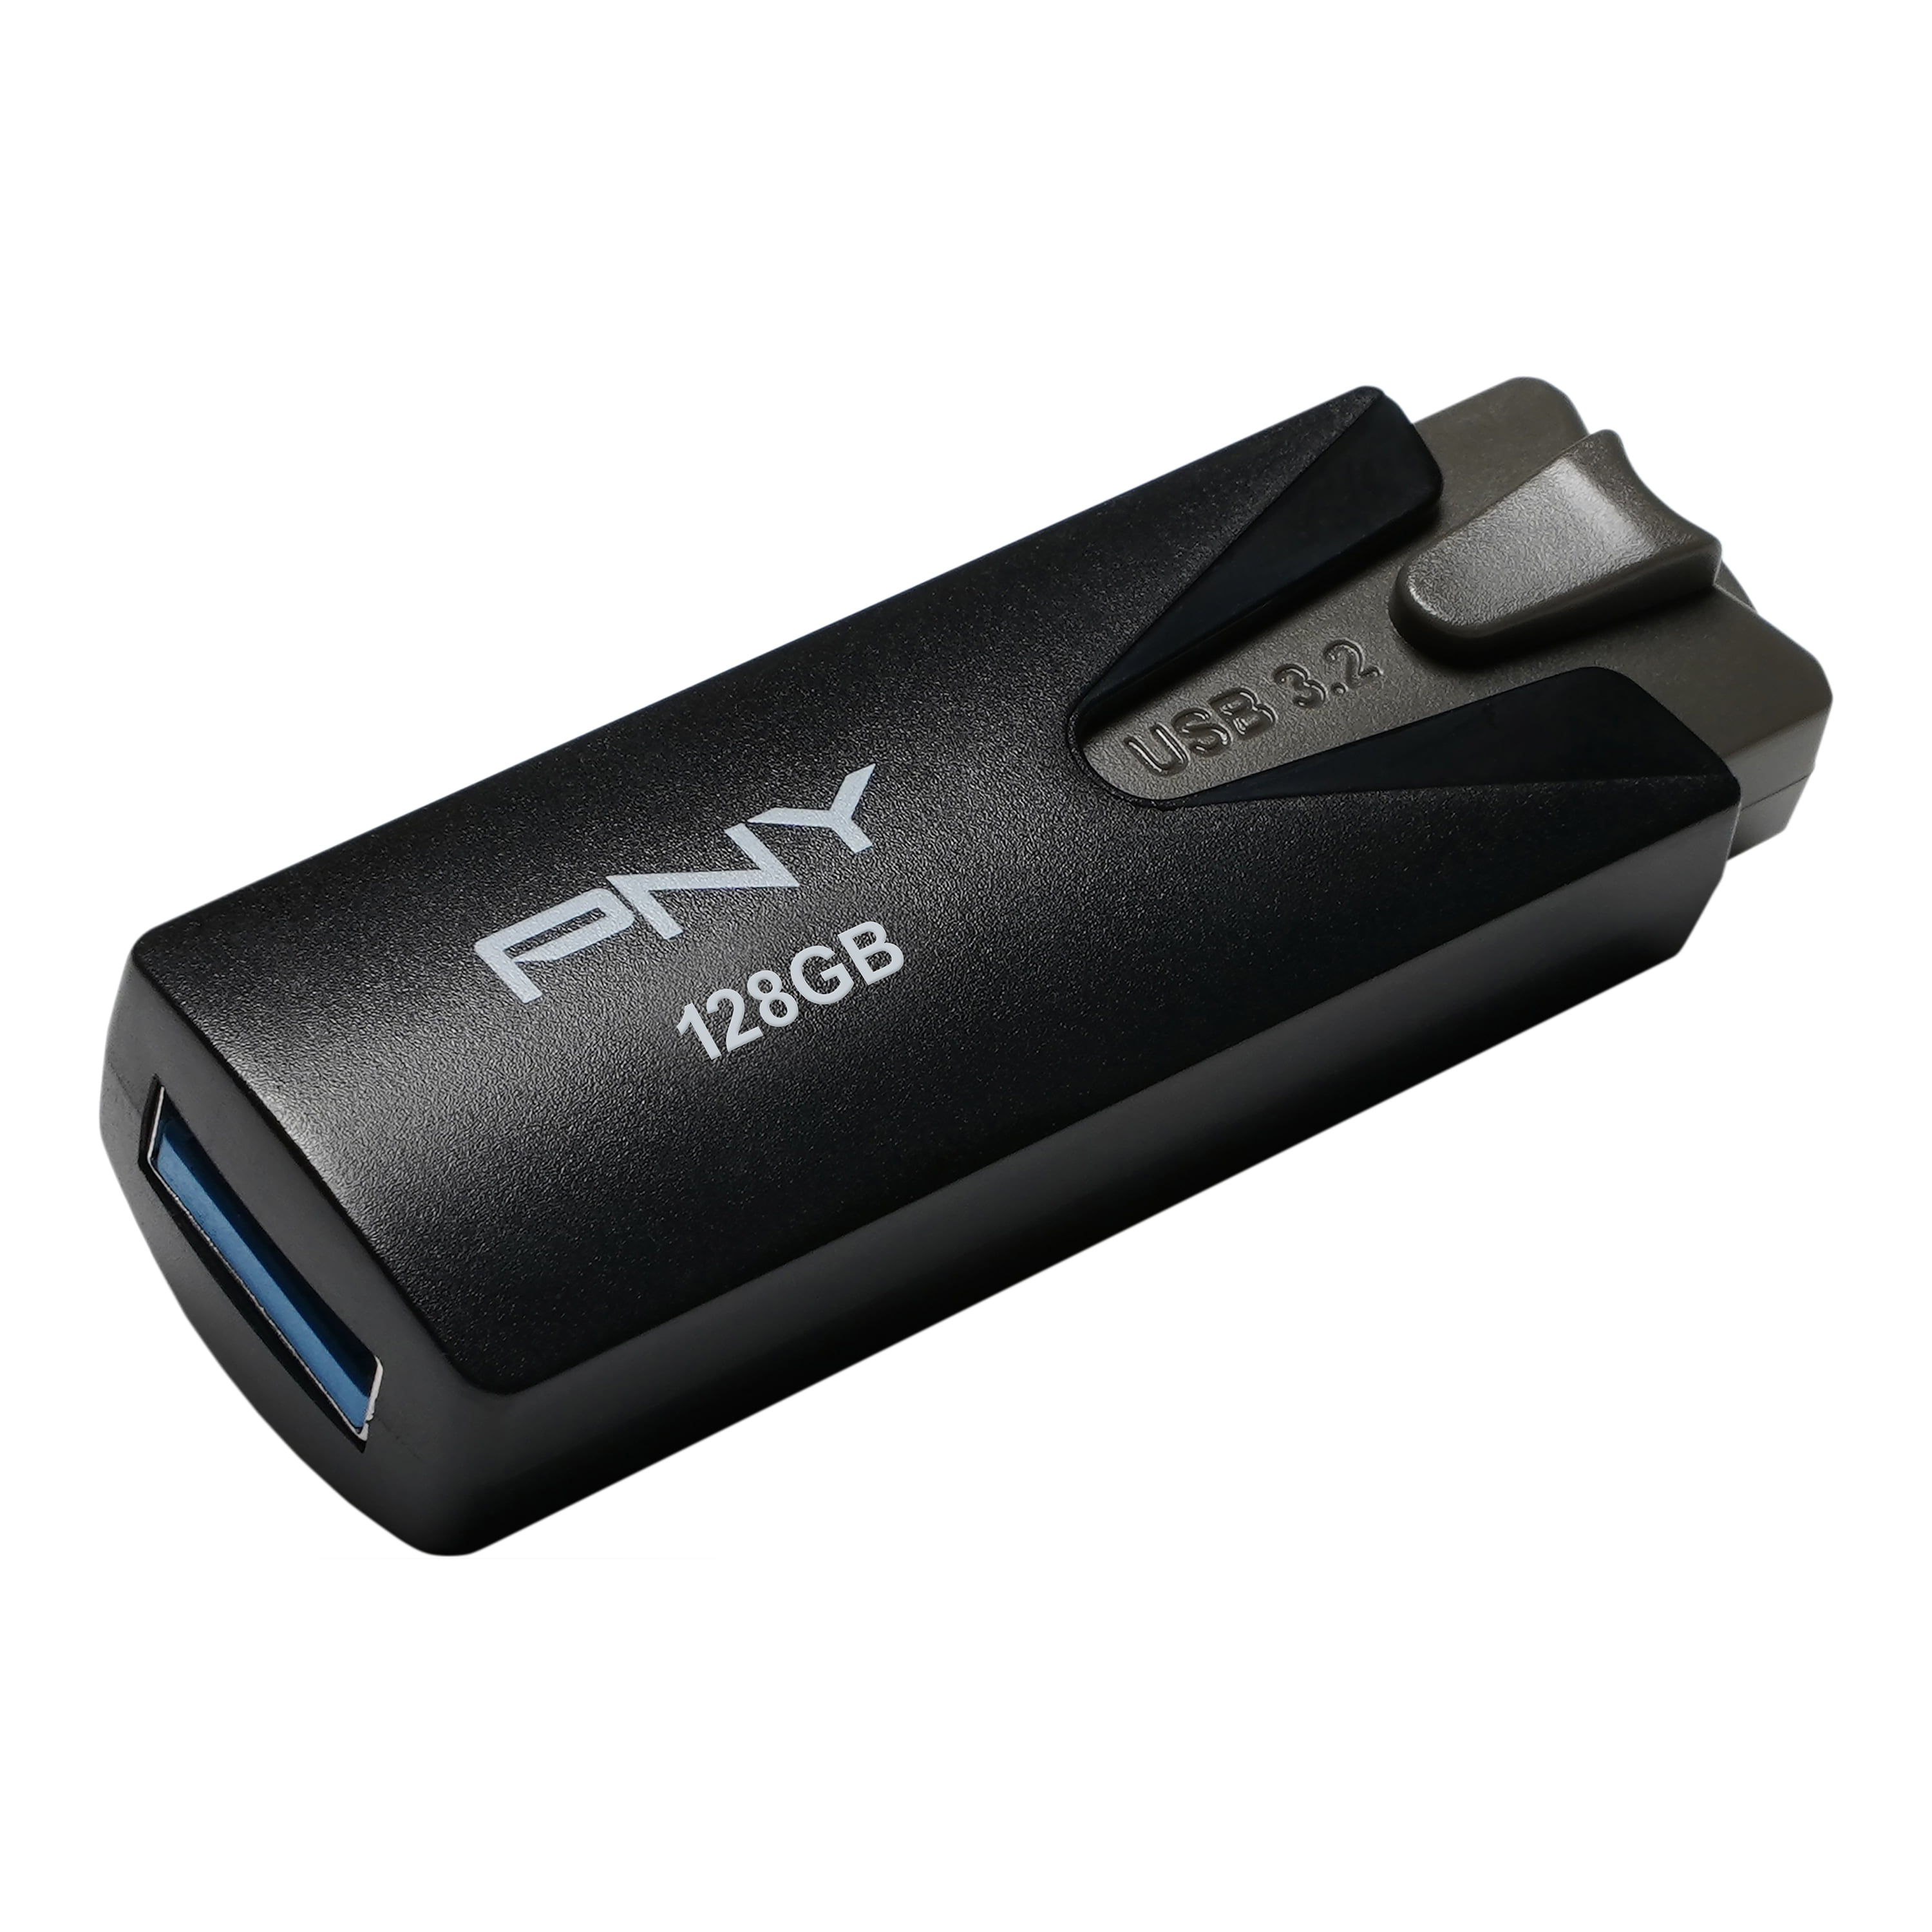 PNY 128GB Elite-X Fit USB 3.1 Flash Drive - 200MB/s